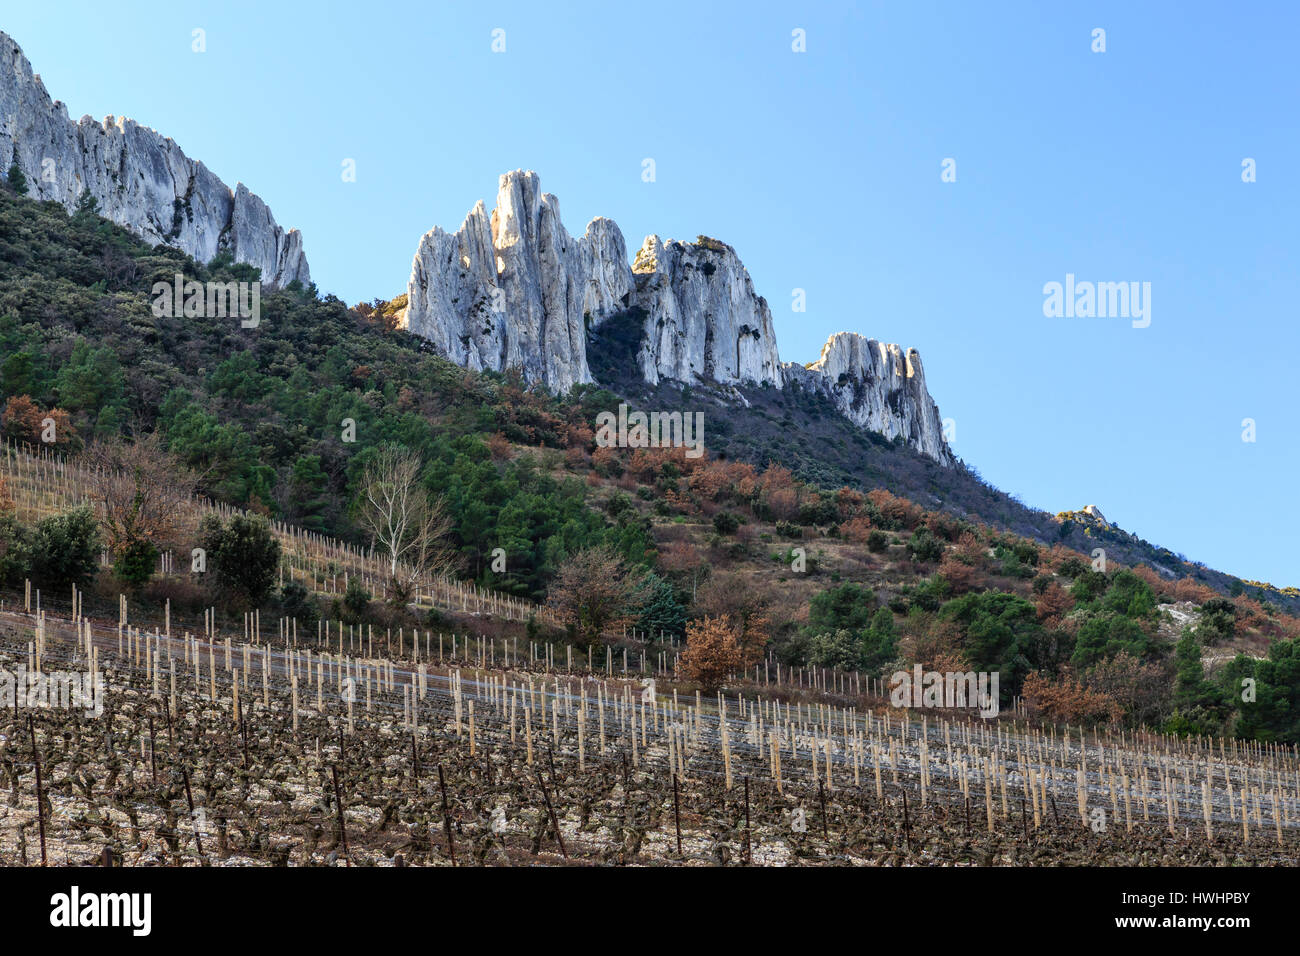 France, Vaucluse, Gigondas,  Dentelles de Montmirail and the  Beaumes-de-Venis vineyard in winter Stock Photo